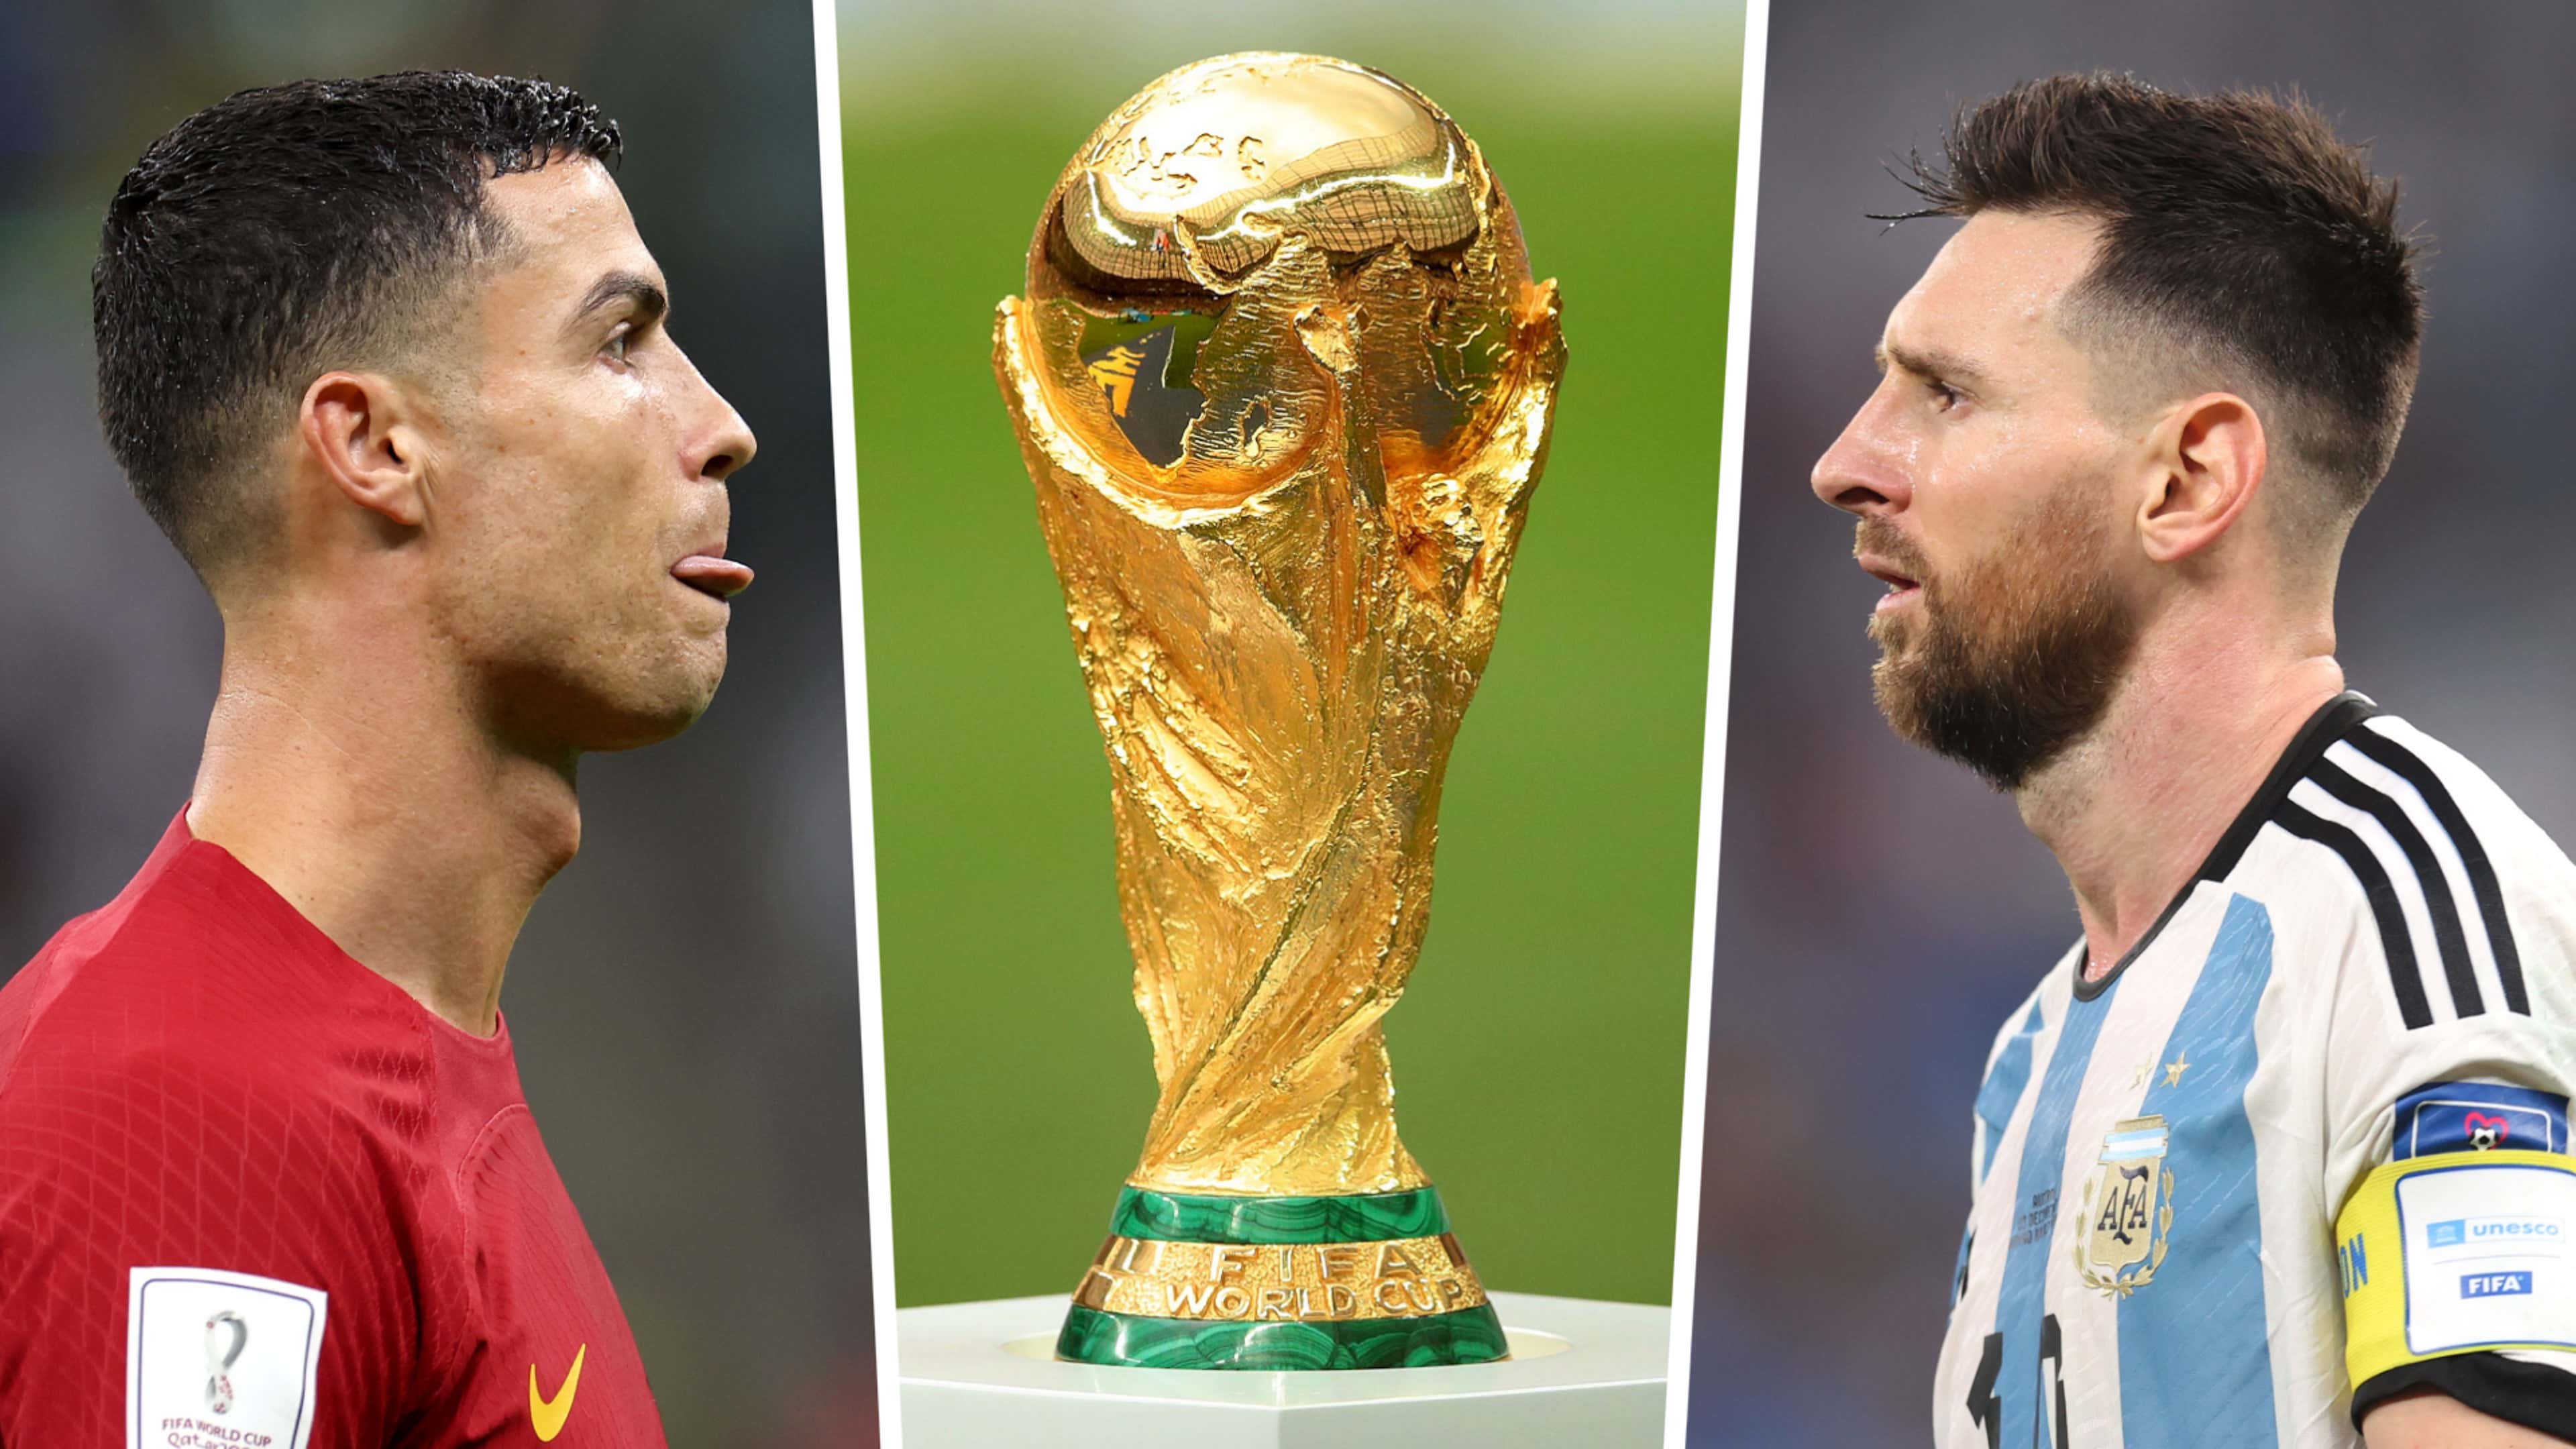 FIFA World Cup 2022 Qatar: Cristiano Ronaldo to Lionel Messi